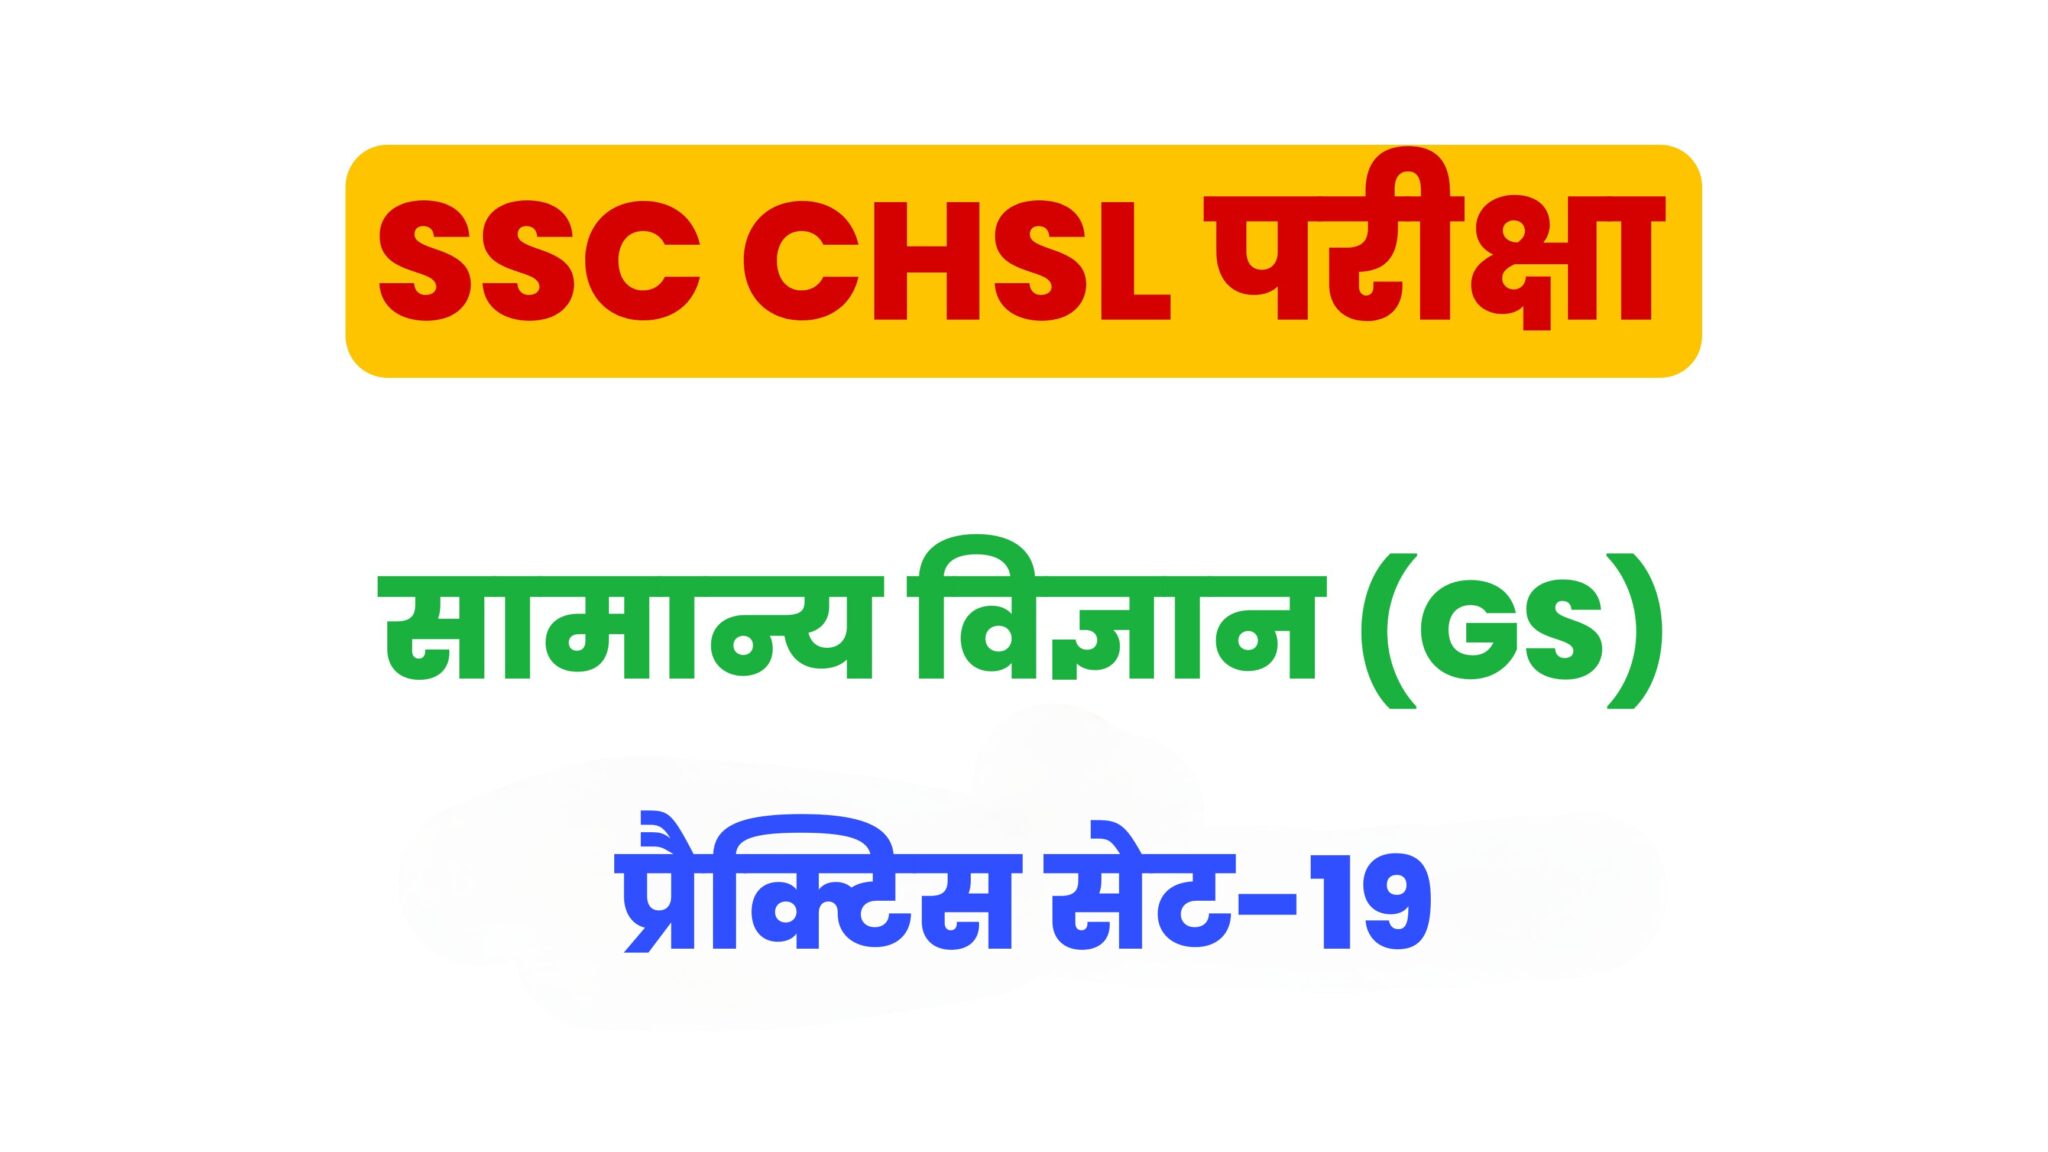 SSC CHSL General Science  प्रैक्टिस सेट 19 : सामान्य विज्ञान के 25 बेहद महत्वपूर्ण प्रश्न